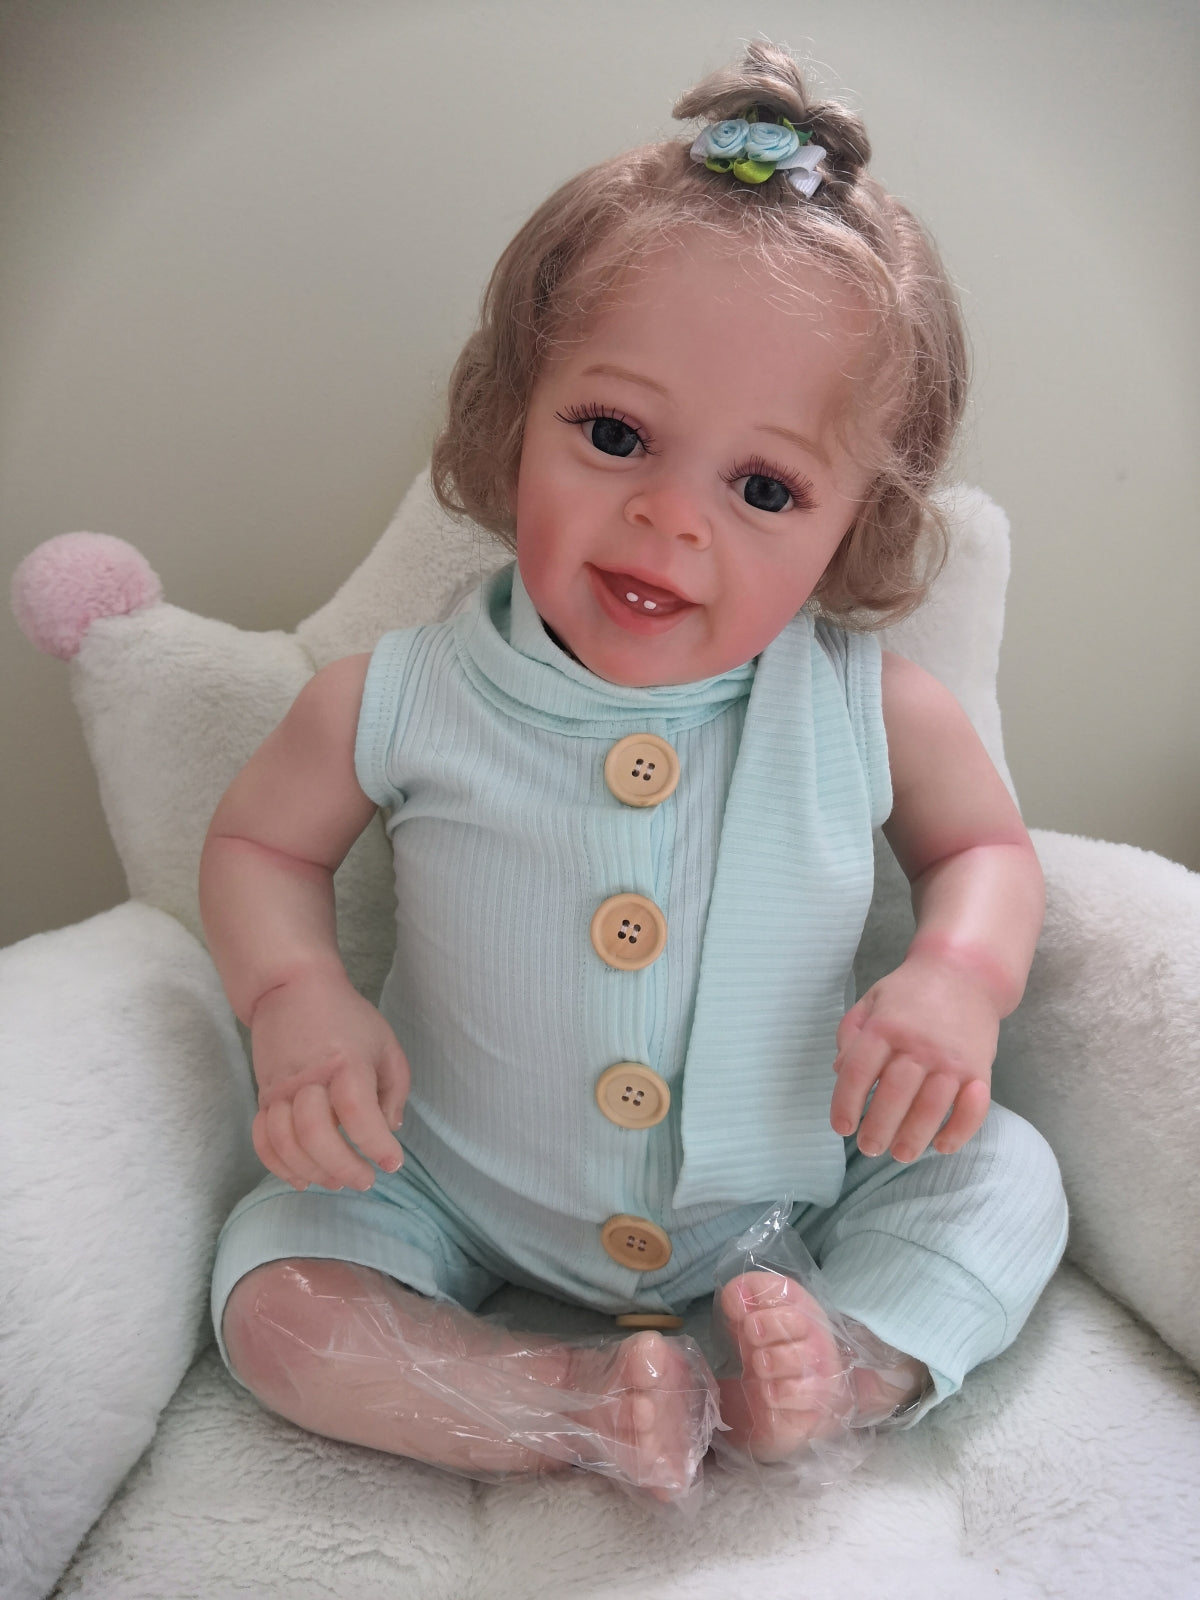 Real pics- 24 Black Skin Reborn Baby Doll Girl 3D Newborn Lifelike Toddler  Gift